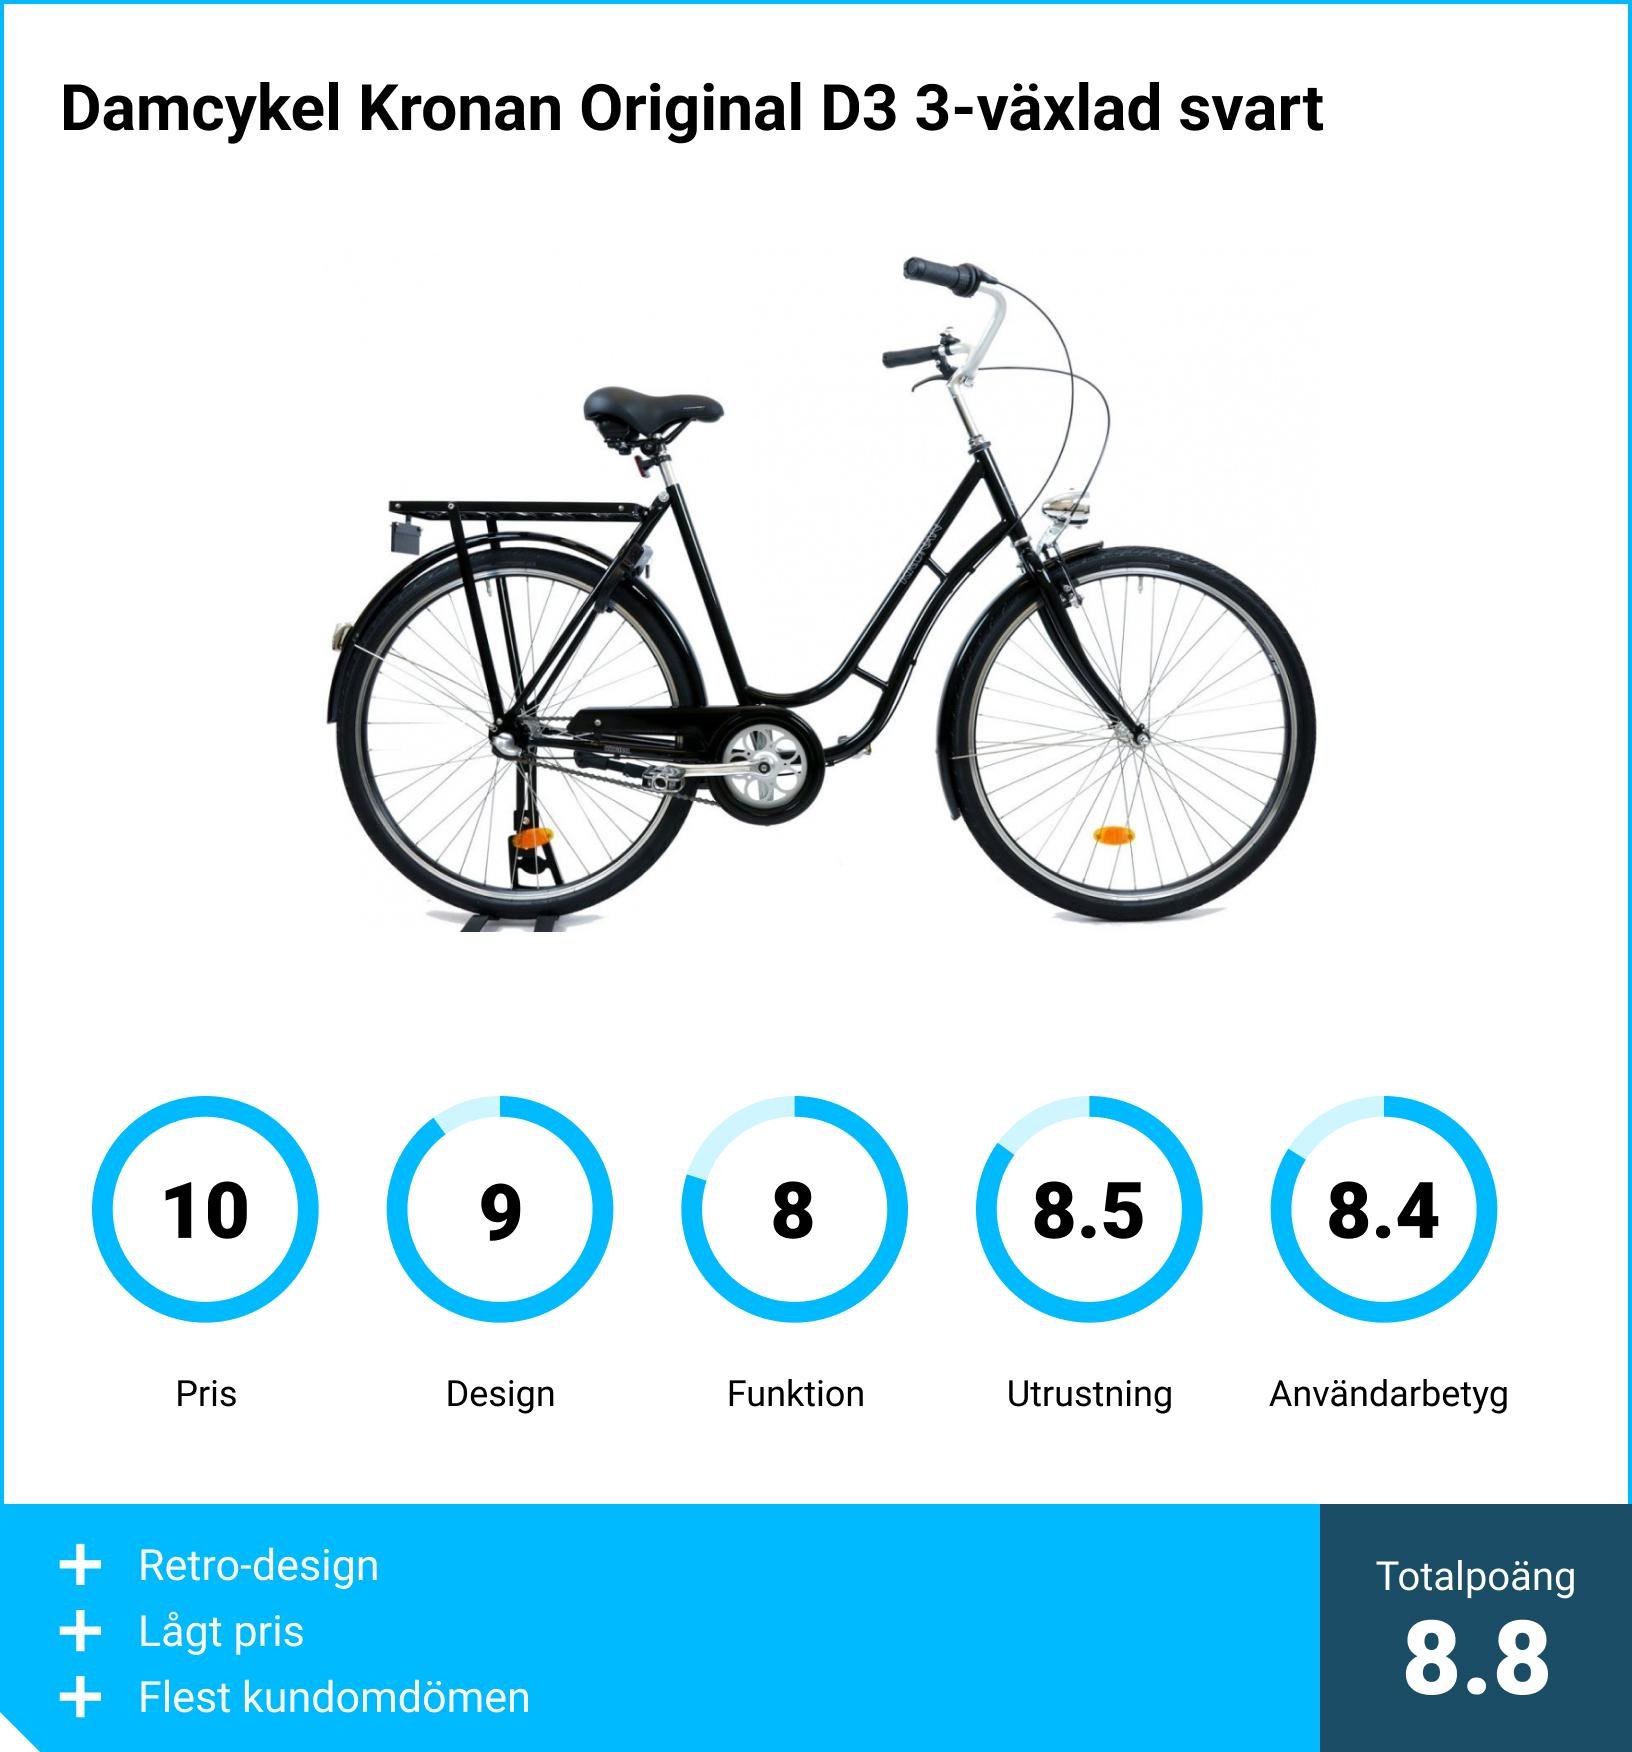 Damcykel bäst i test - Damcykel Kronan Original D3 3-växlad svart